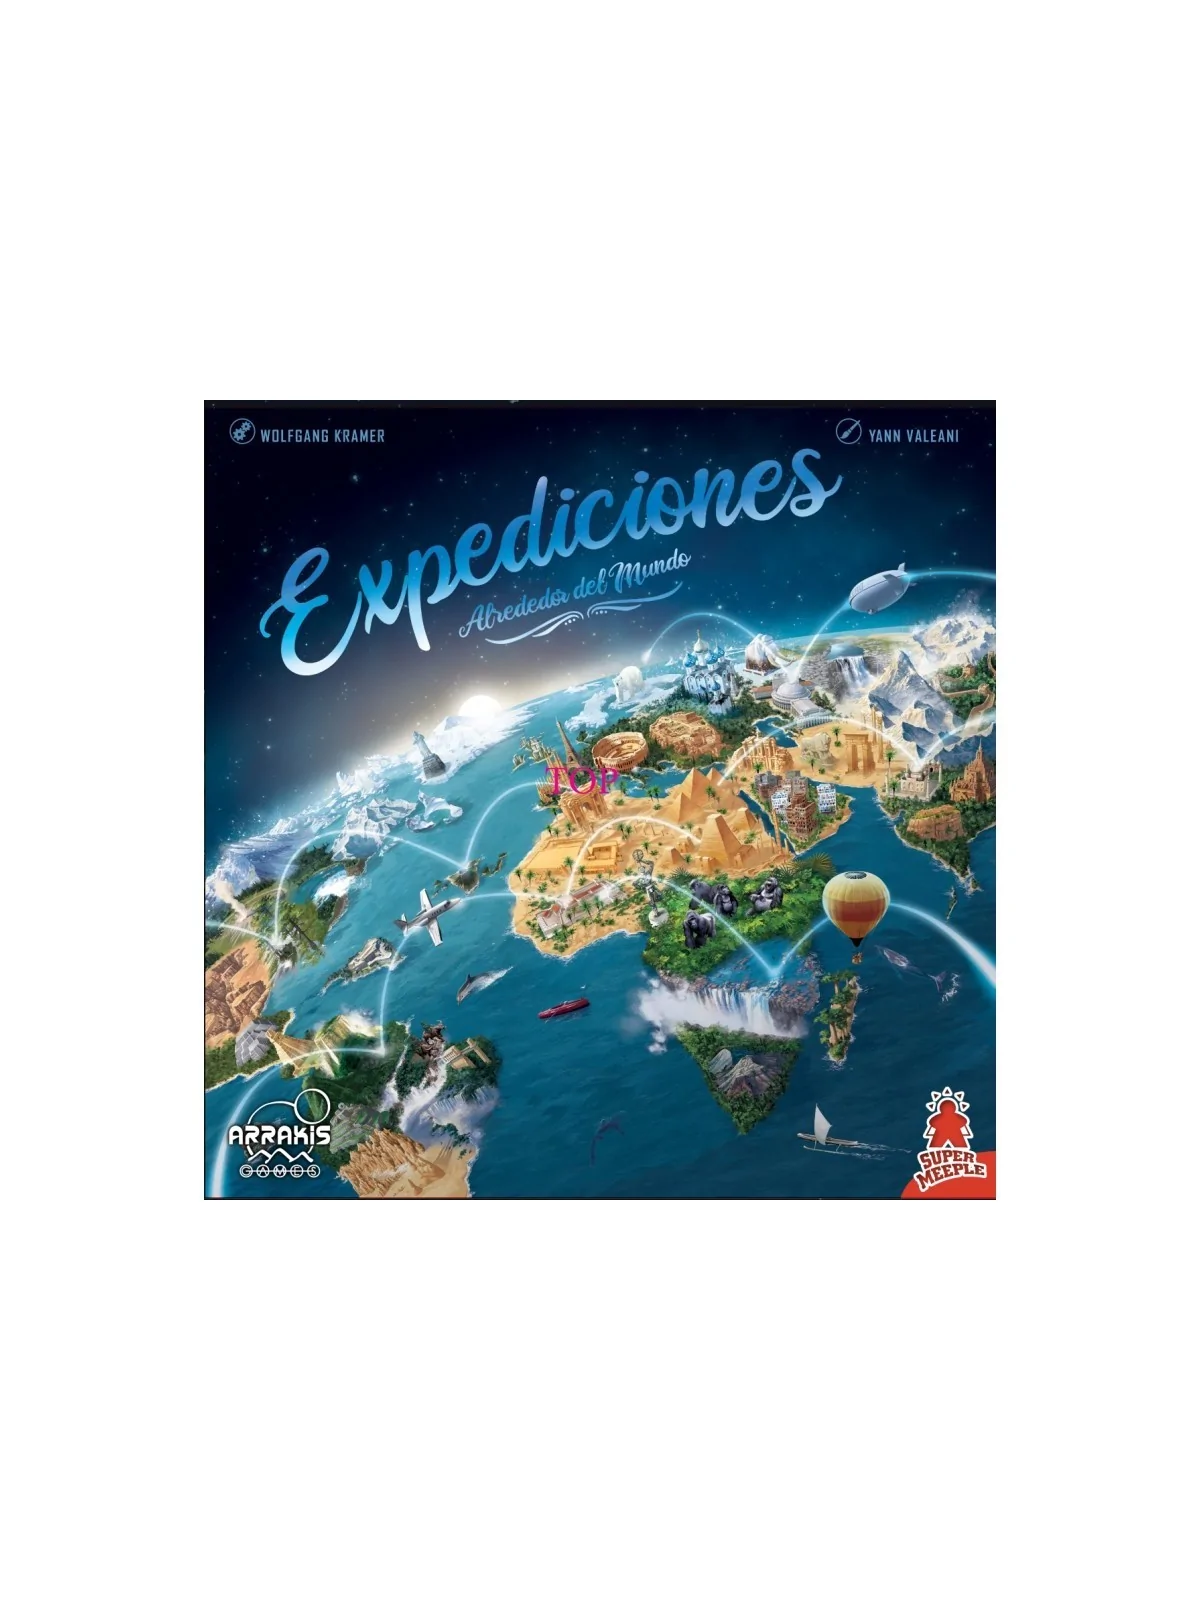 Comprar Expediciones: Alrededor del Mundo barato al mejor precio 39,95